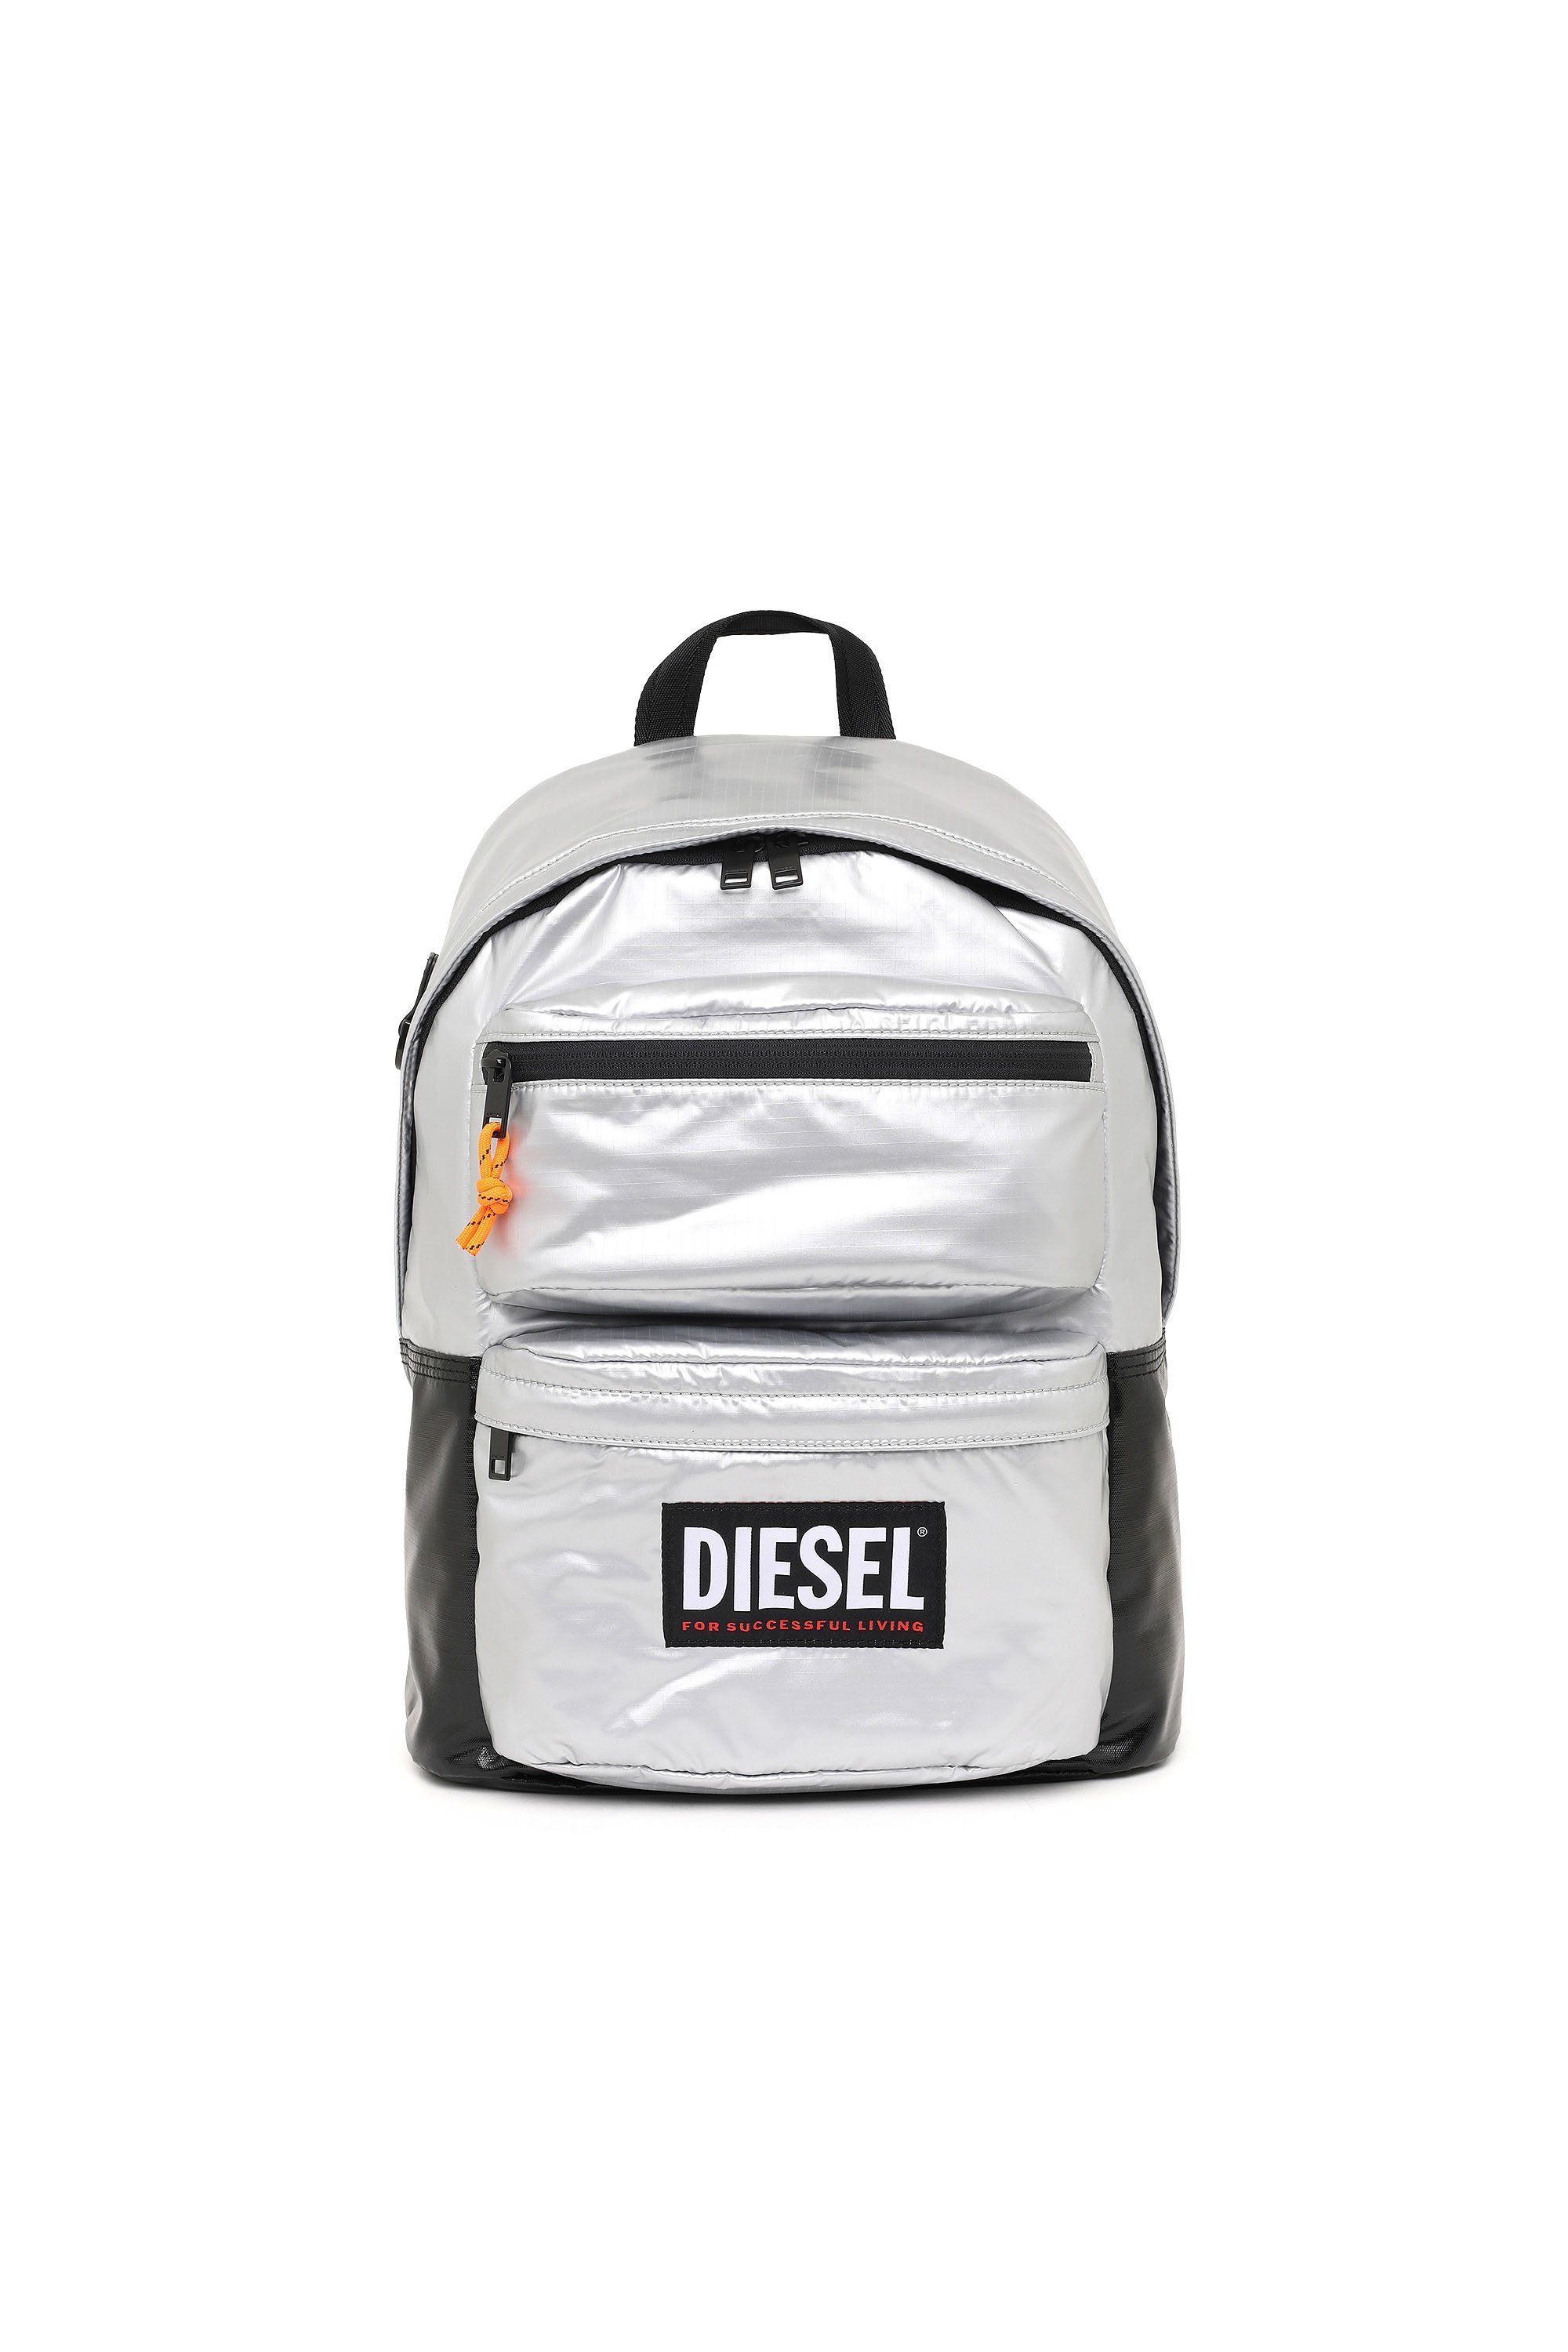 Diesel - RODYO PAT, Silver - Image 1